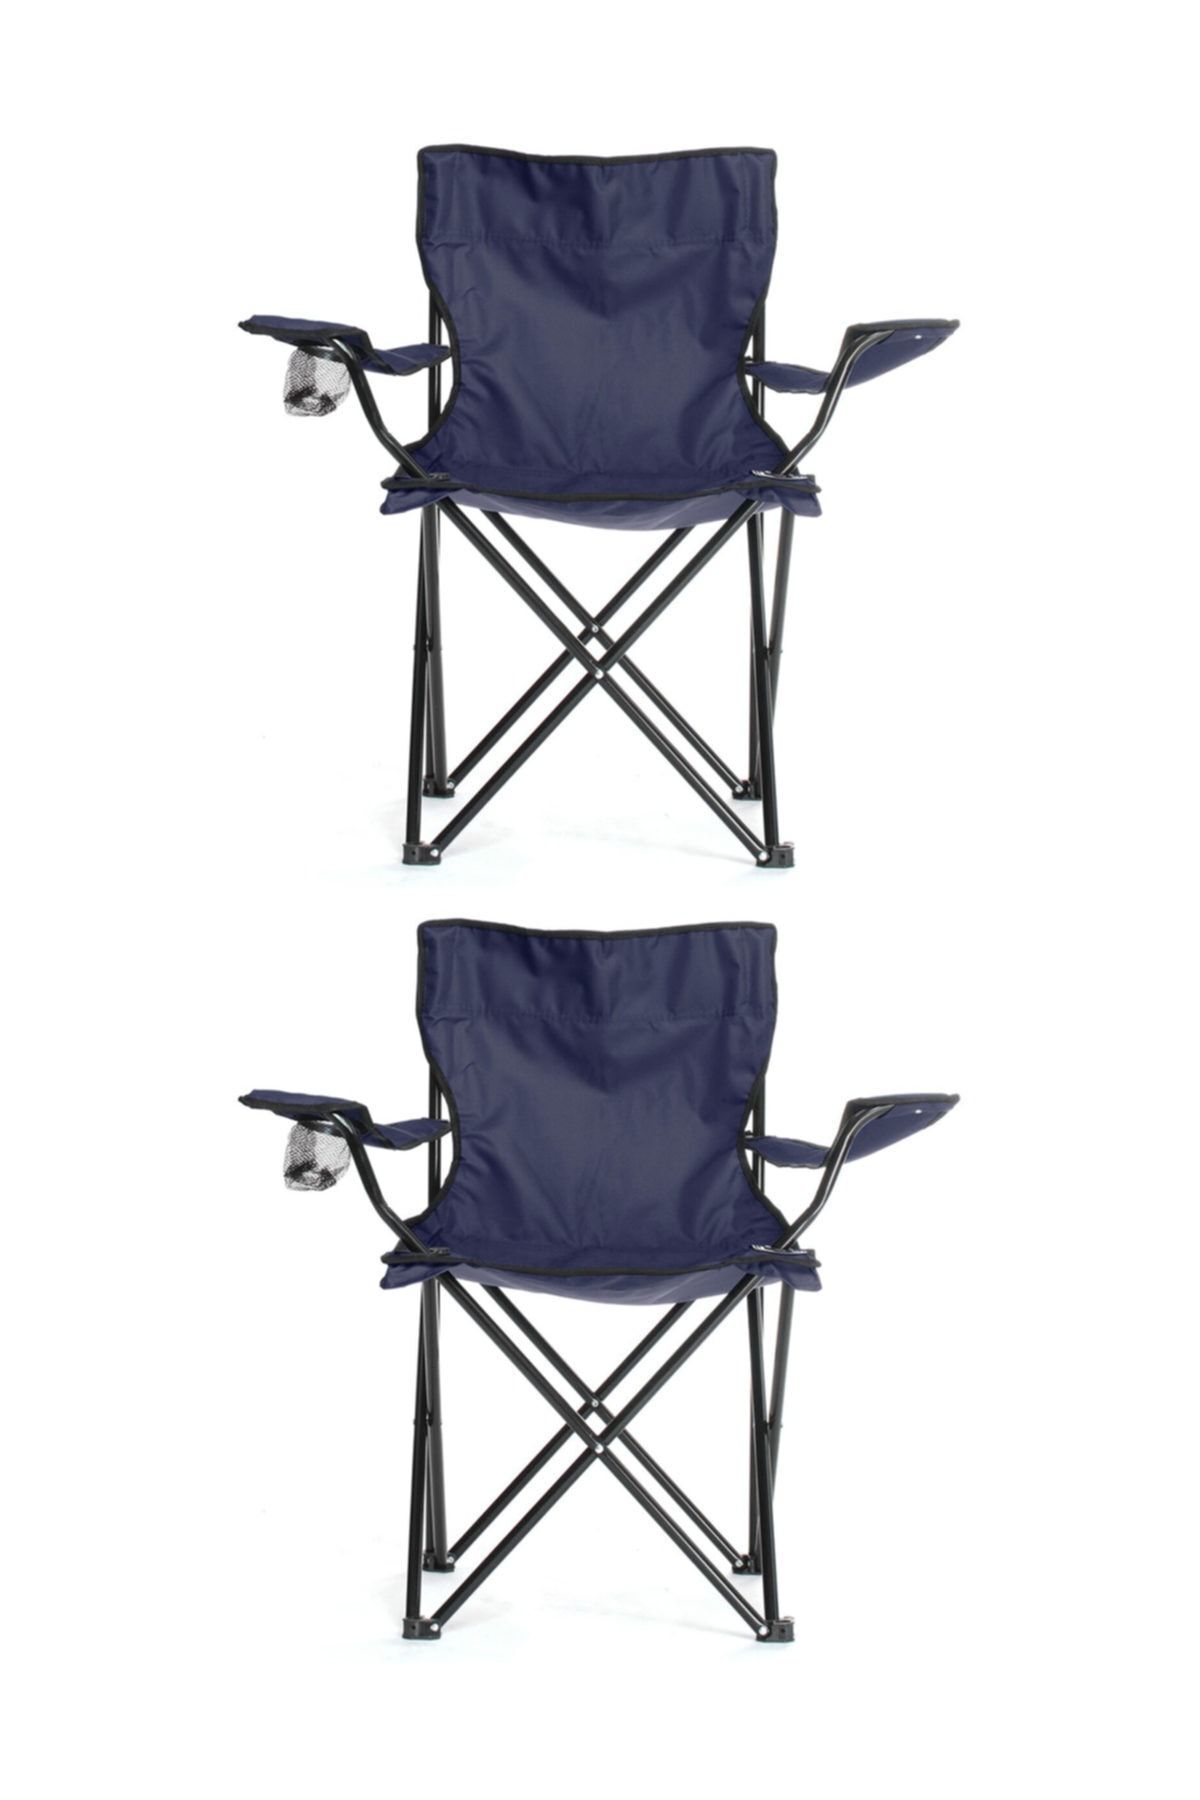 Tedarikcenter 2 Adet Taşınabilir Katlanır Kamp Sandalyesi Teleskopik Rejisör Kamp Sandalyesi - Lacivert